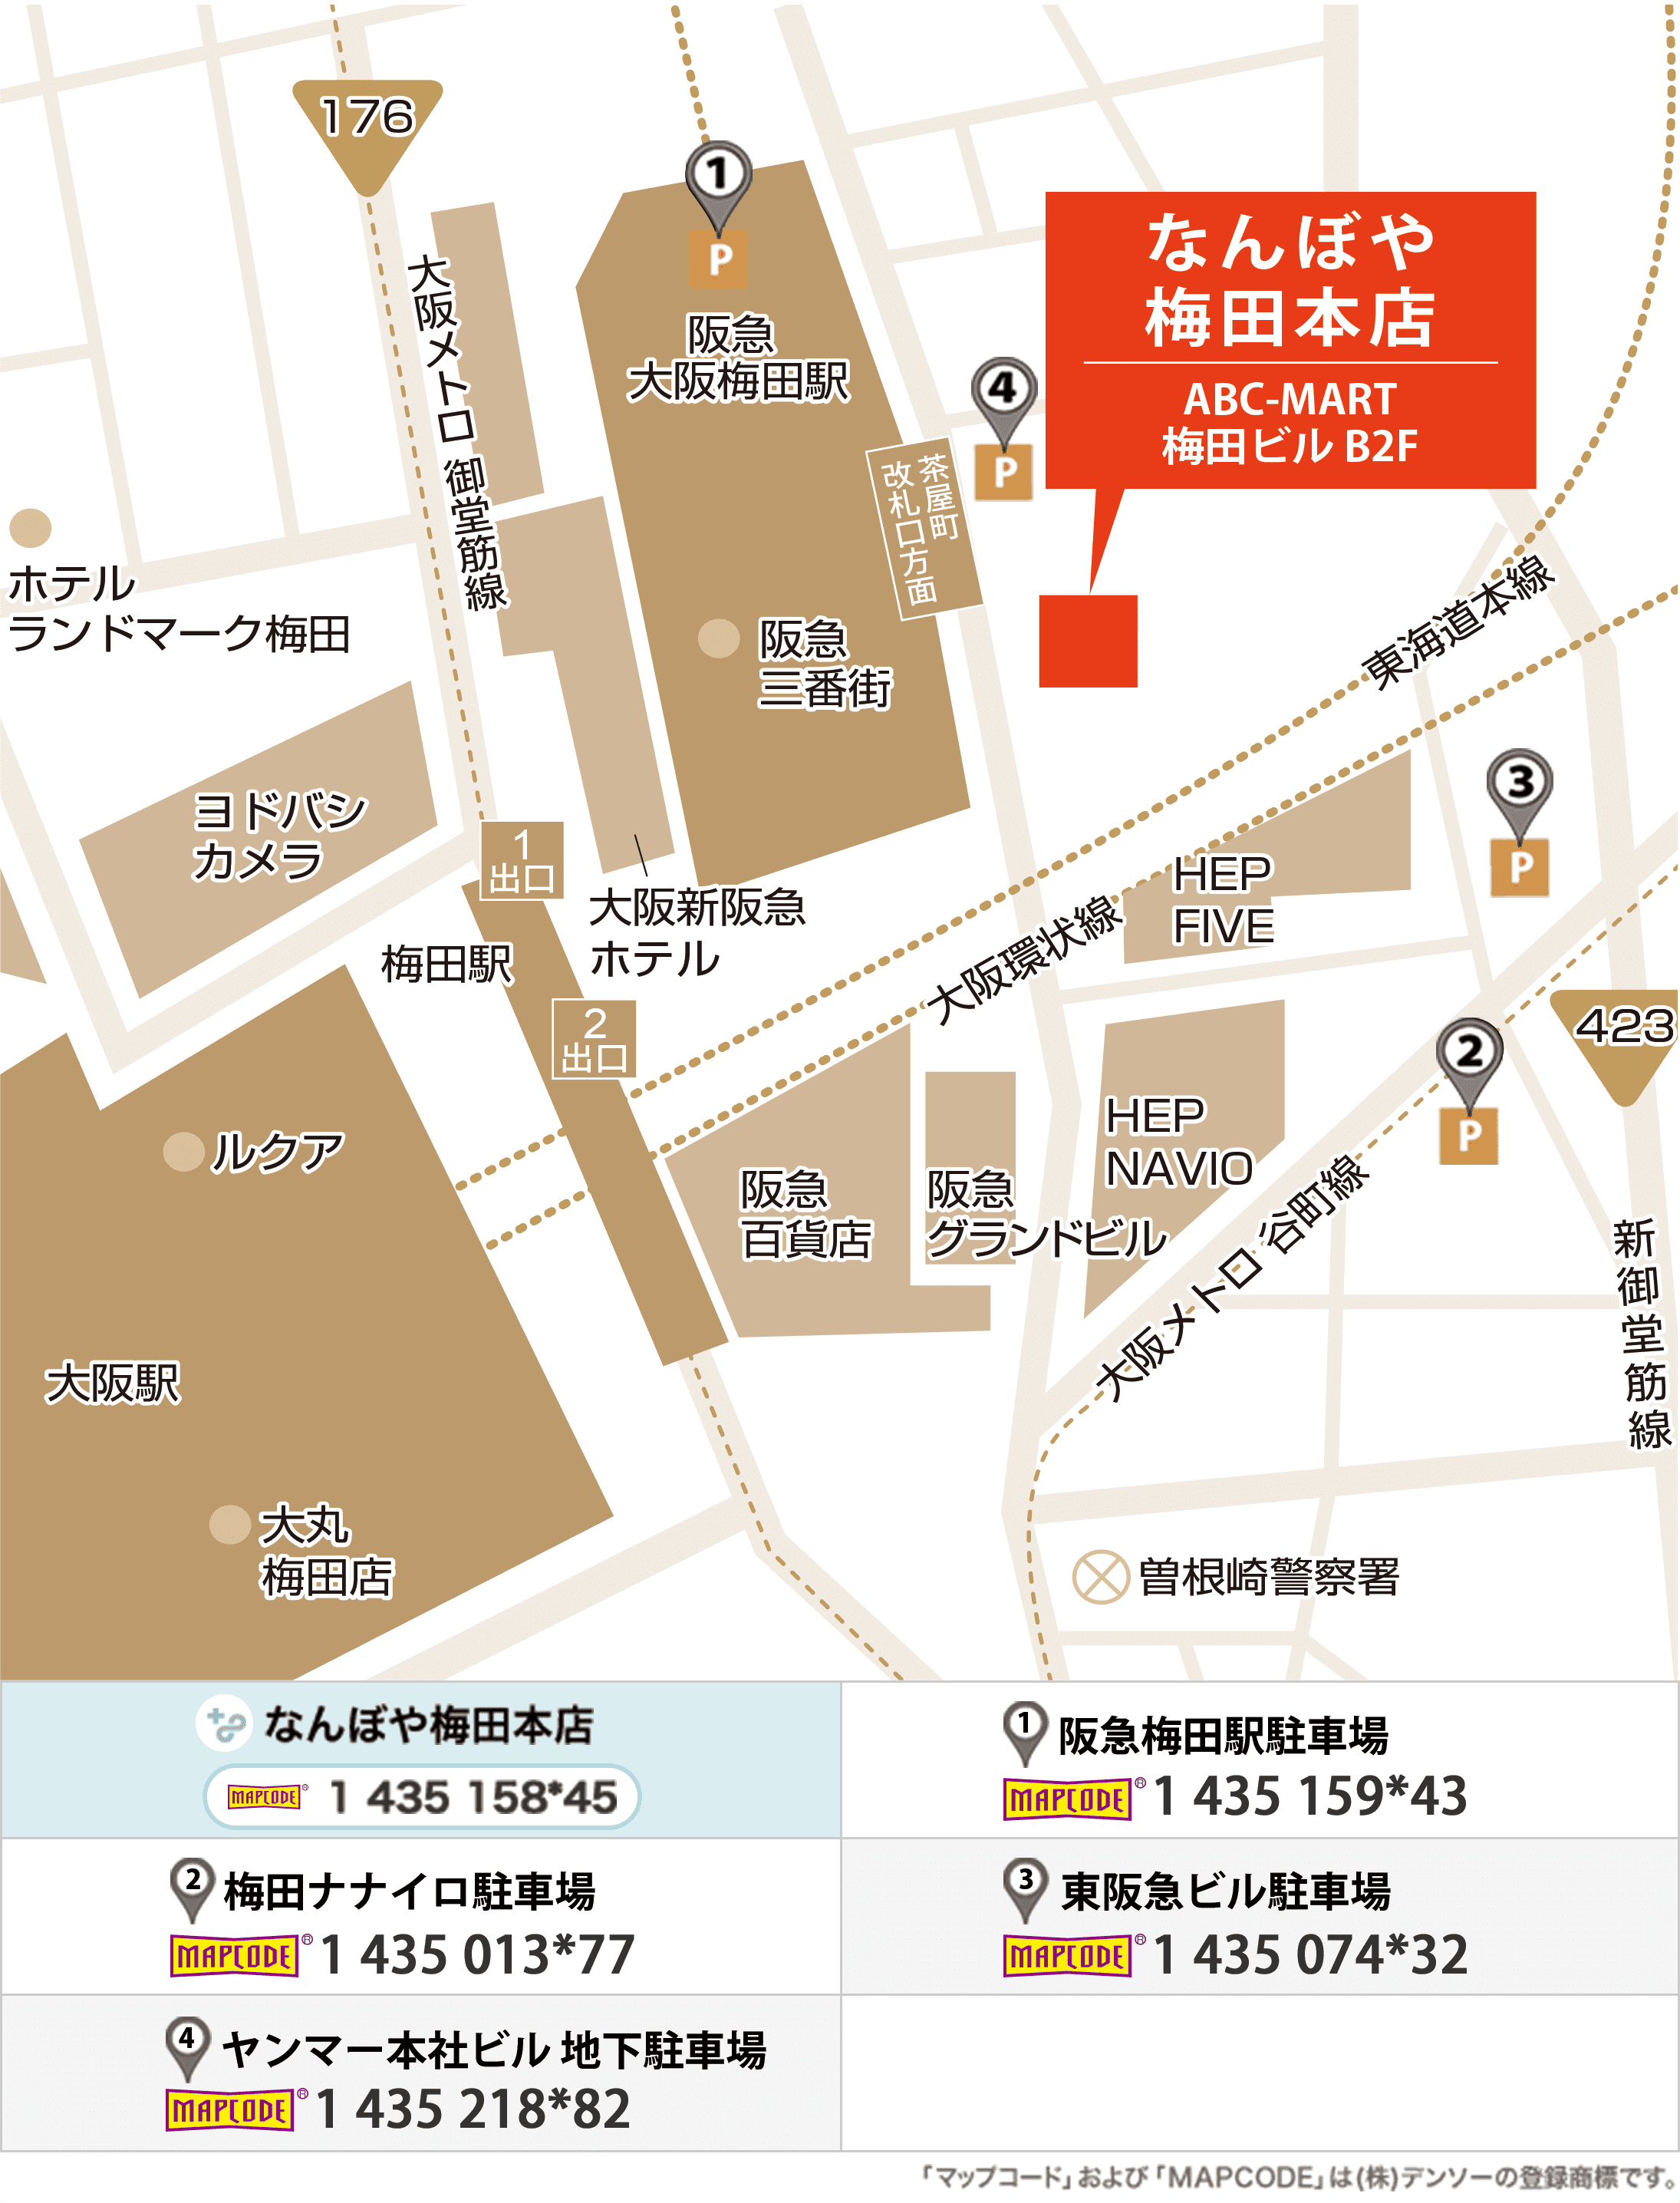 梅田本店のイラストマップ